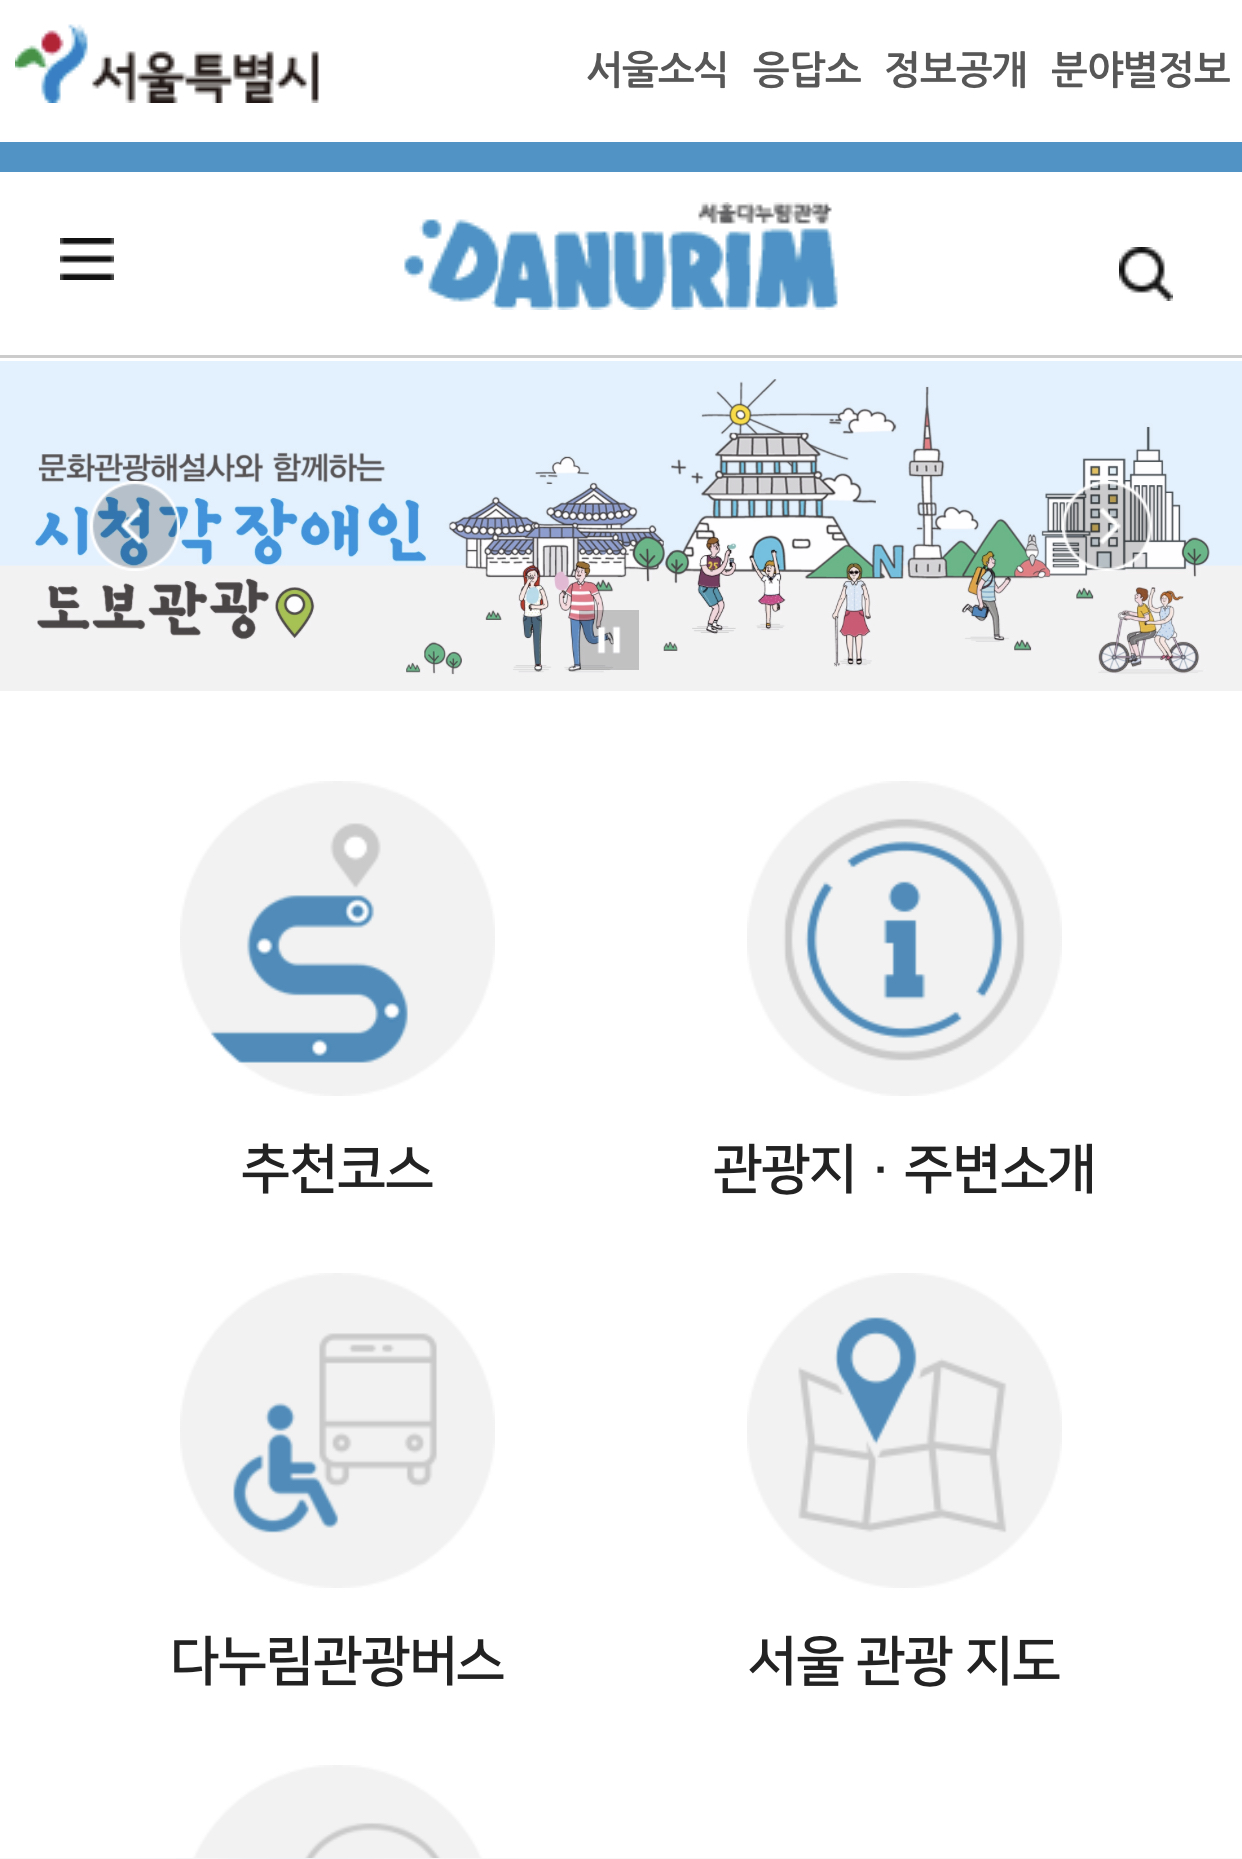 서울다누림관광 모바일 홈페이지 스크릿샷